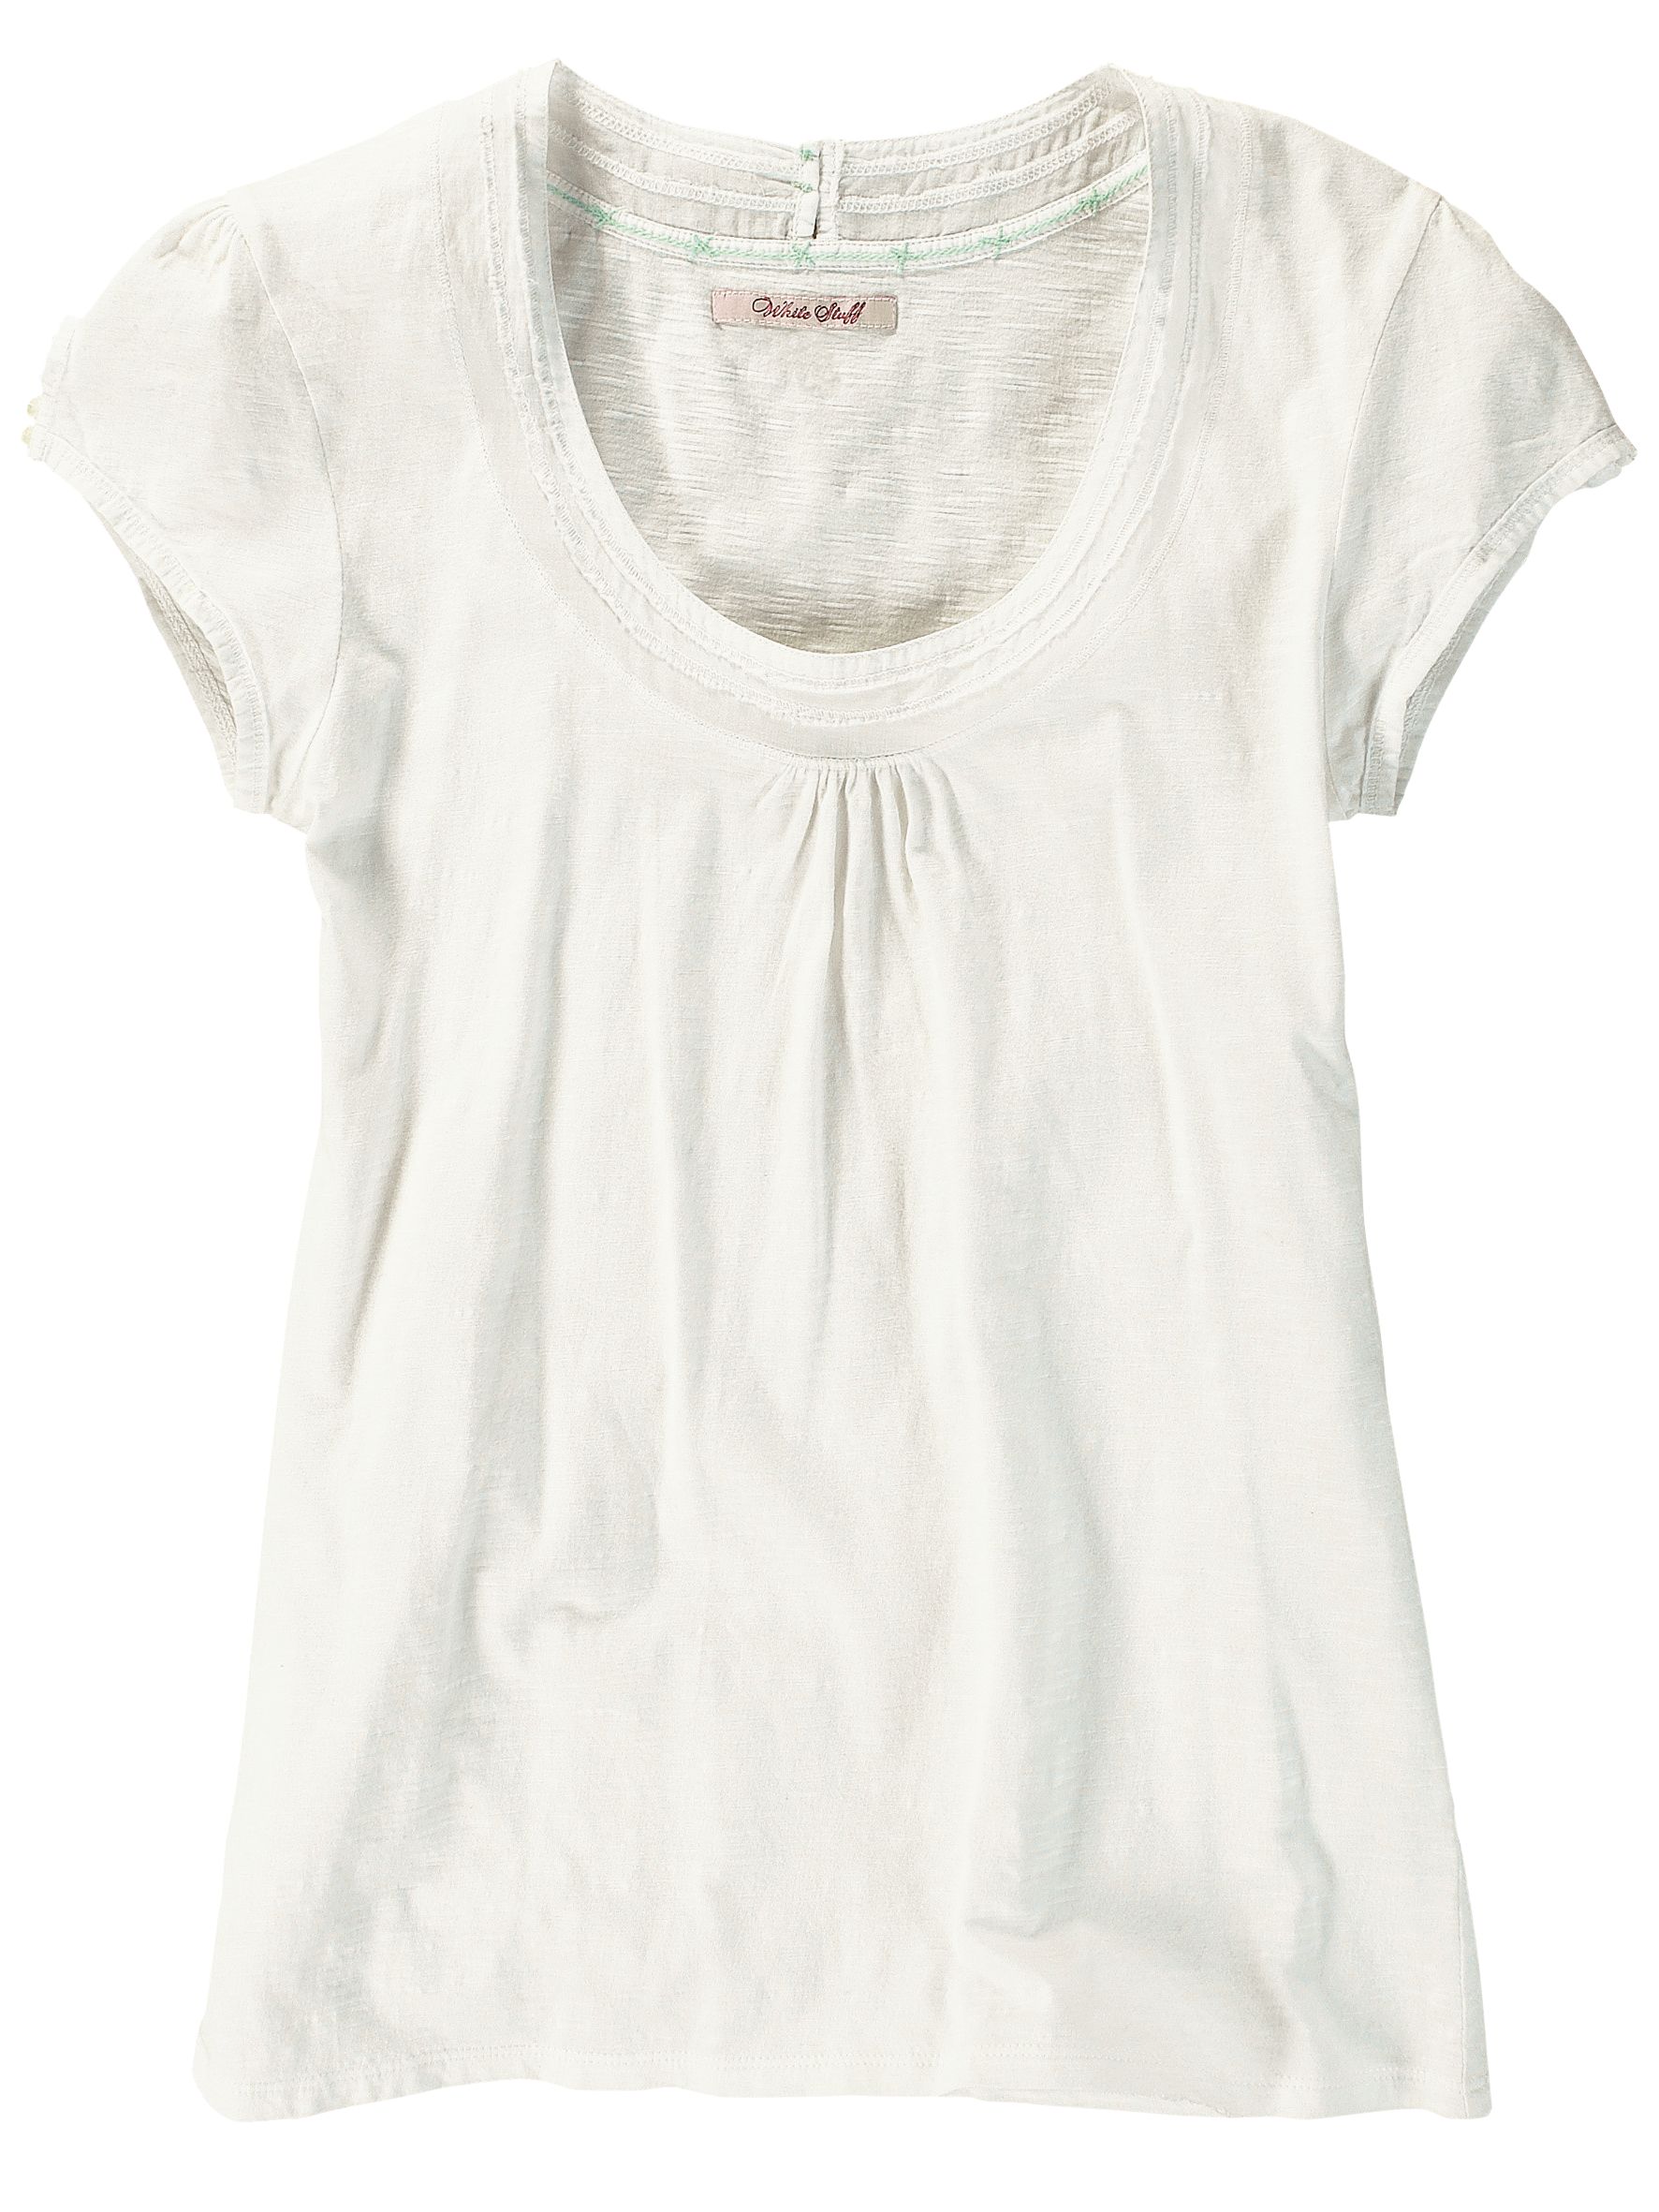 White Stuff Debutante T-Shirt, White